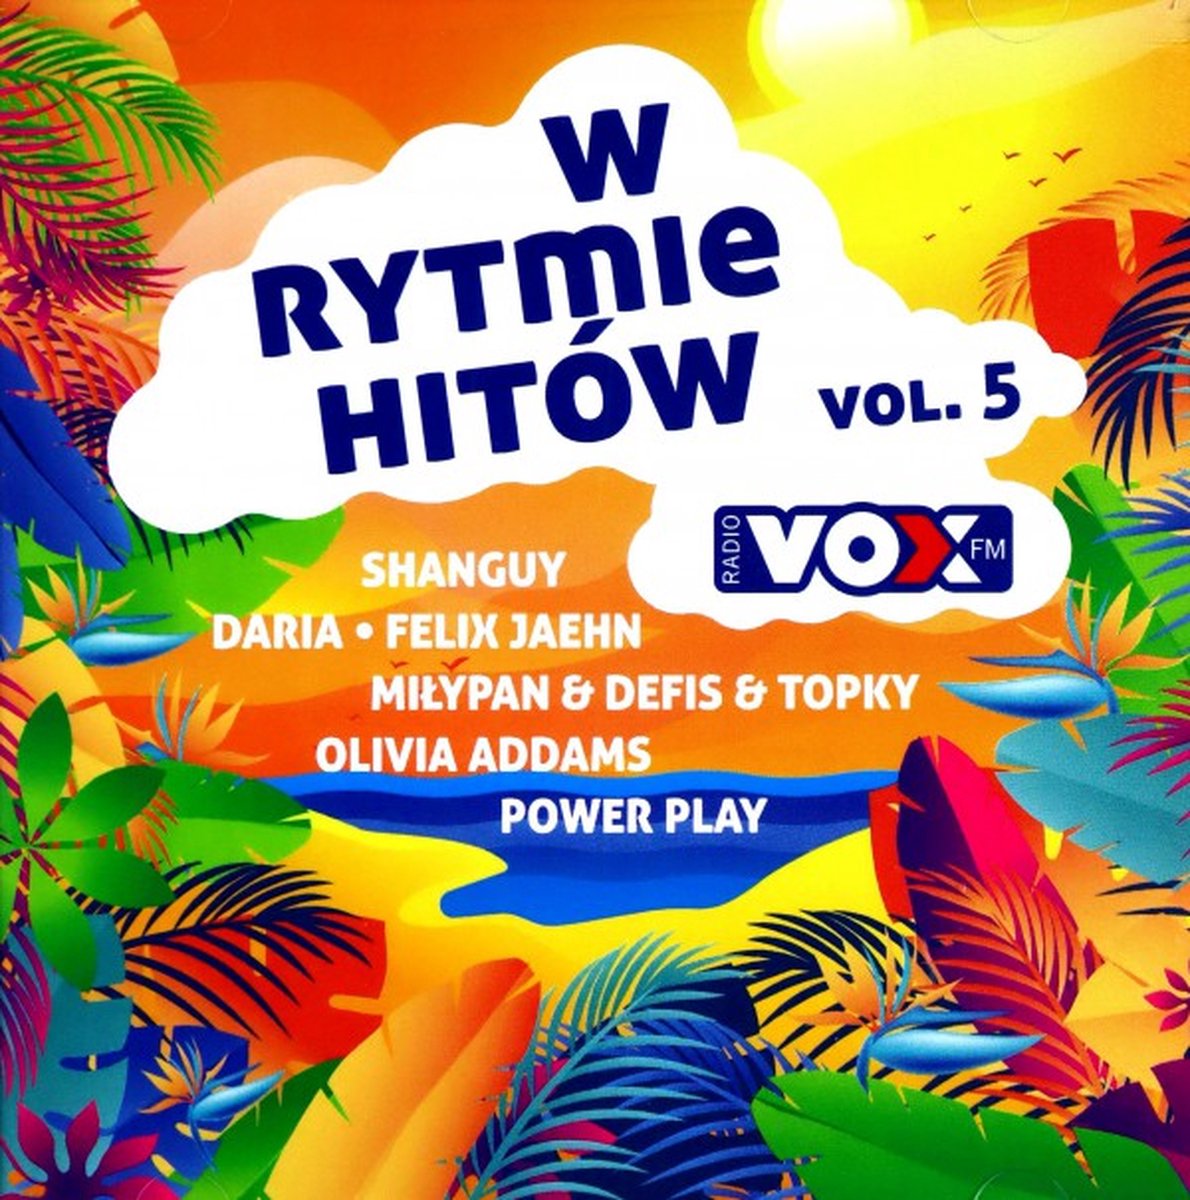 Vox Fm - W Rytmie Hitów Vol. 5 [2CD] - MiłyPan